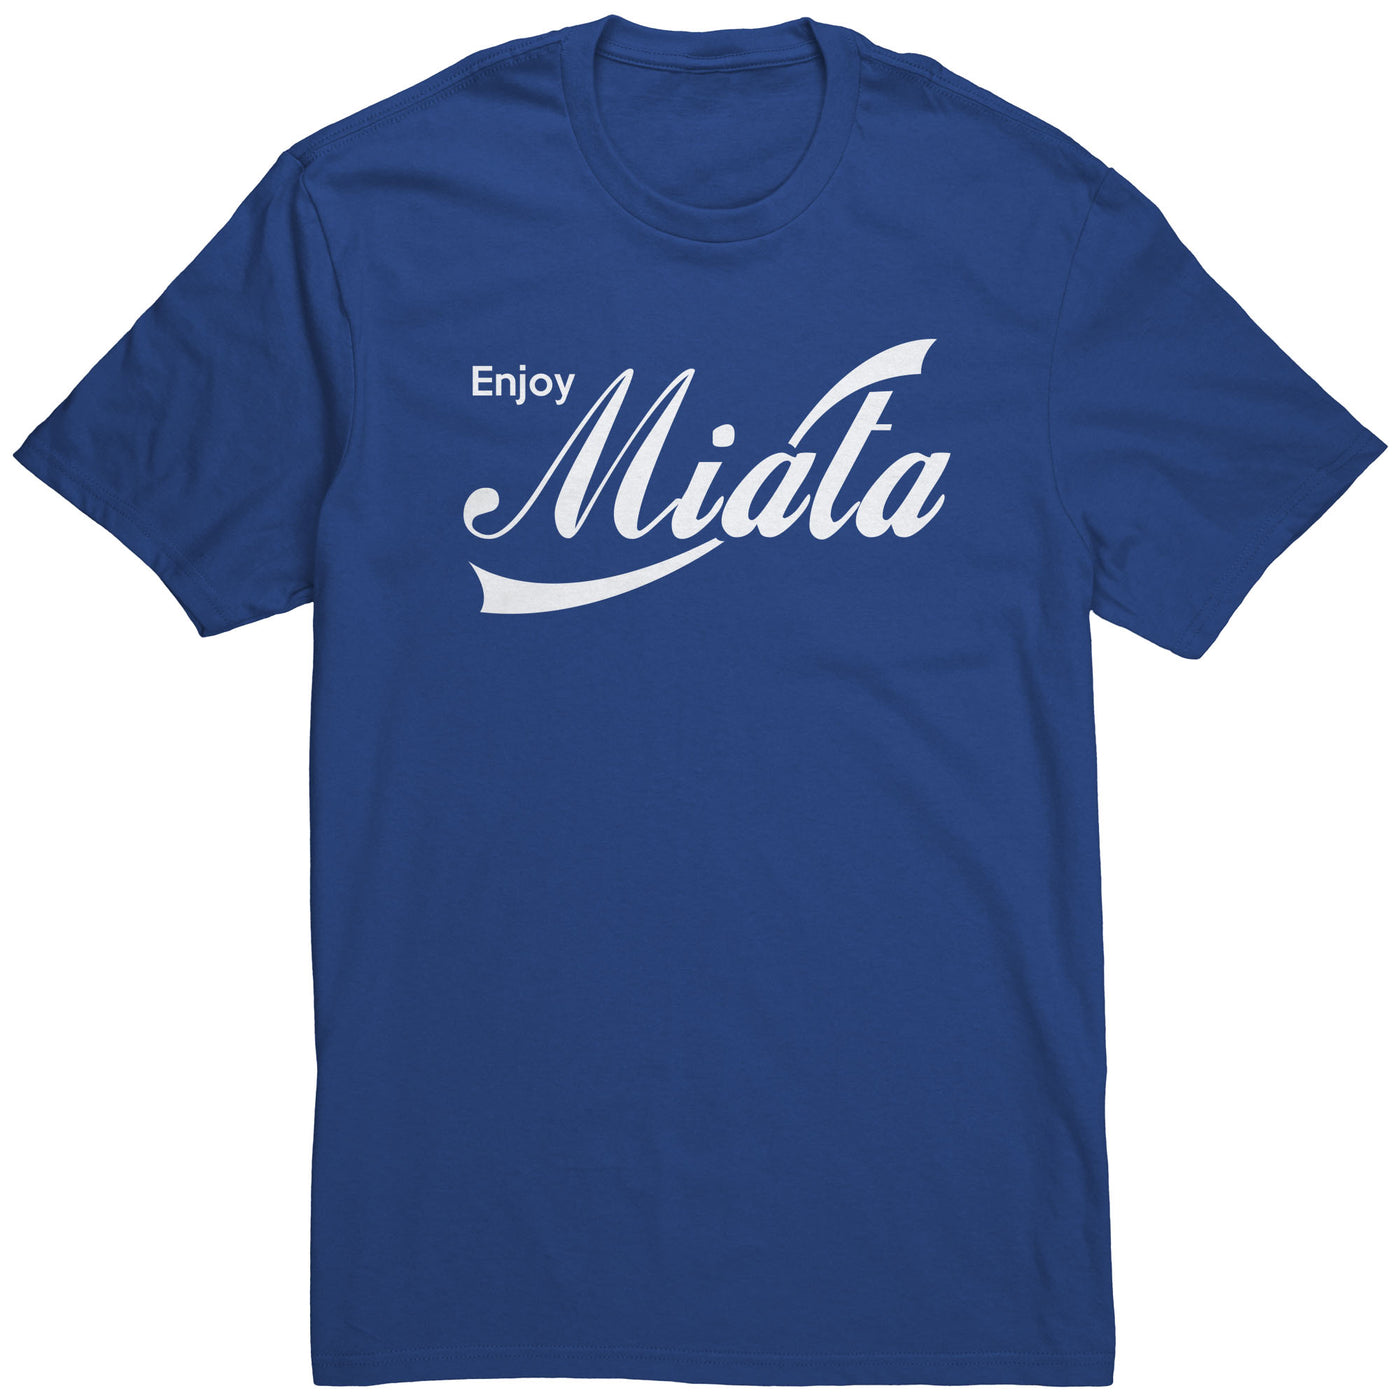 enjoy-miata-shirt-blue